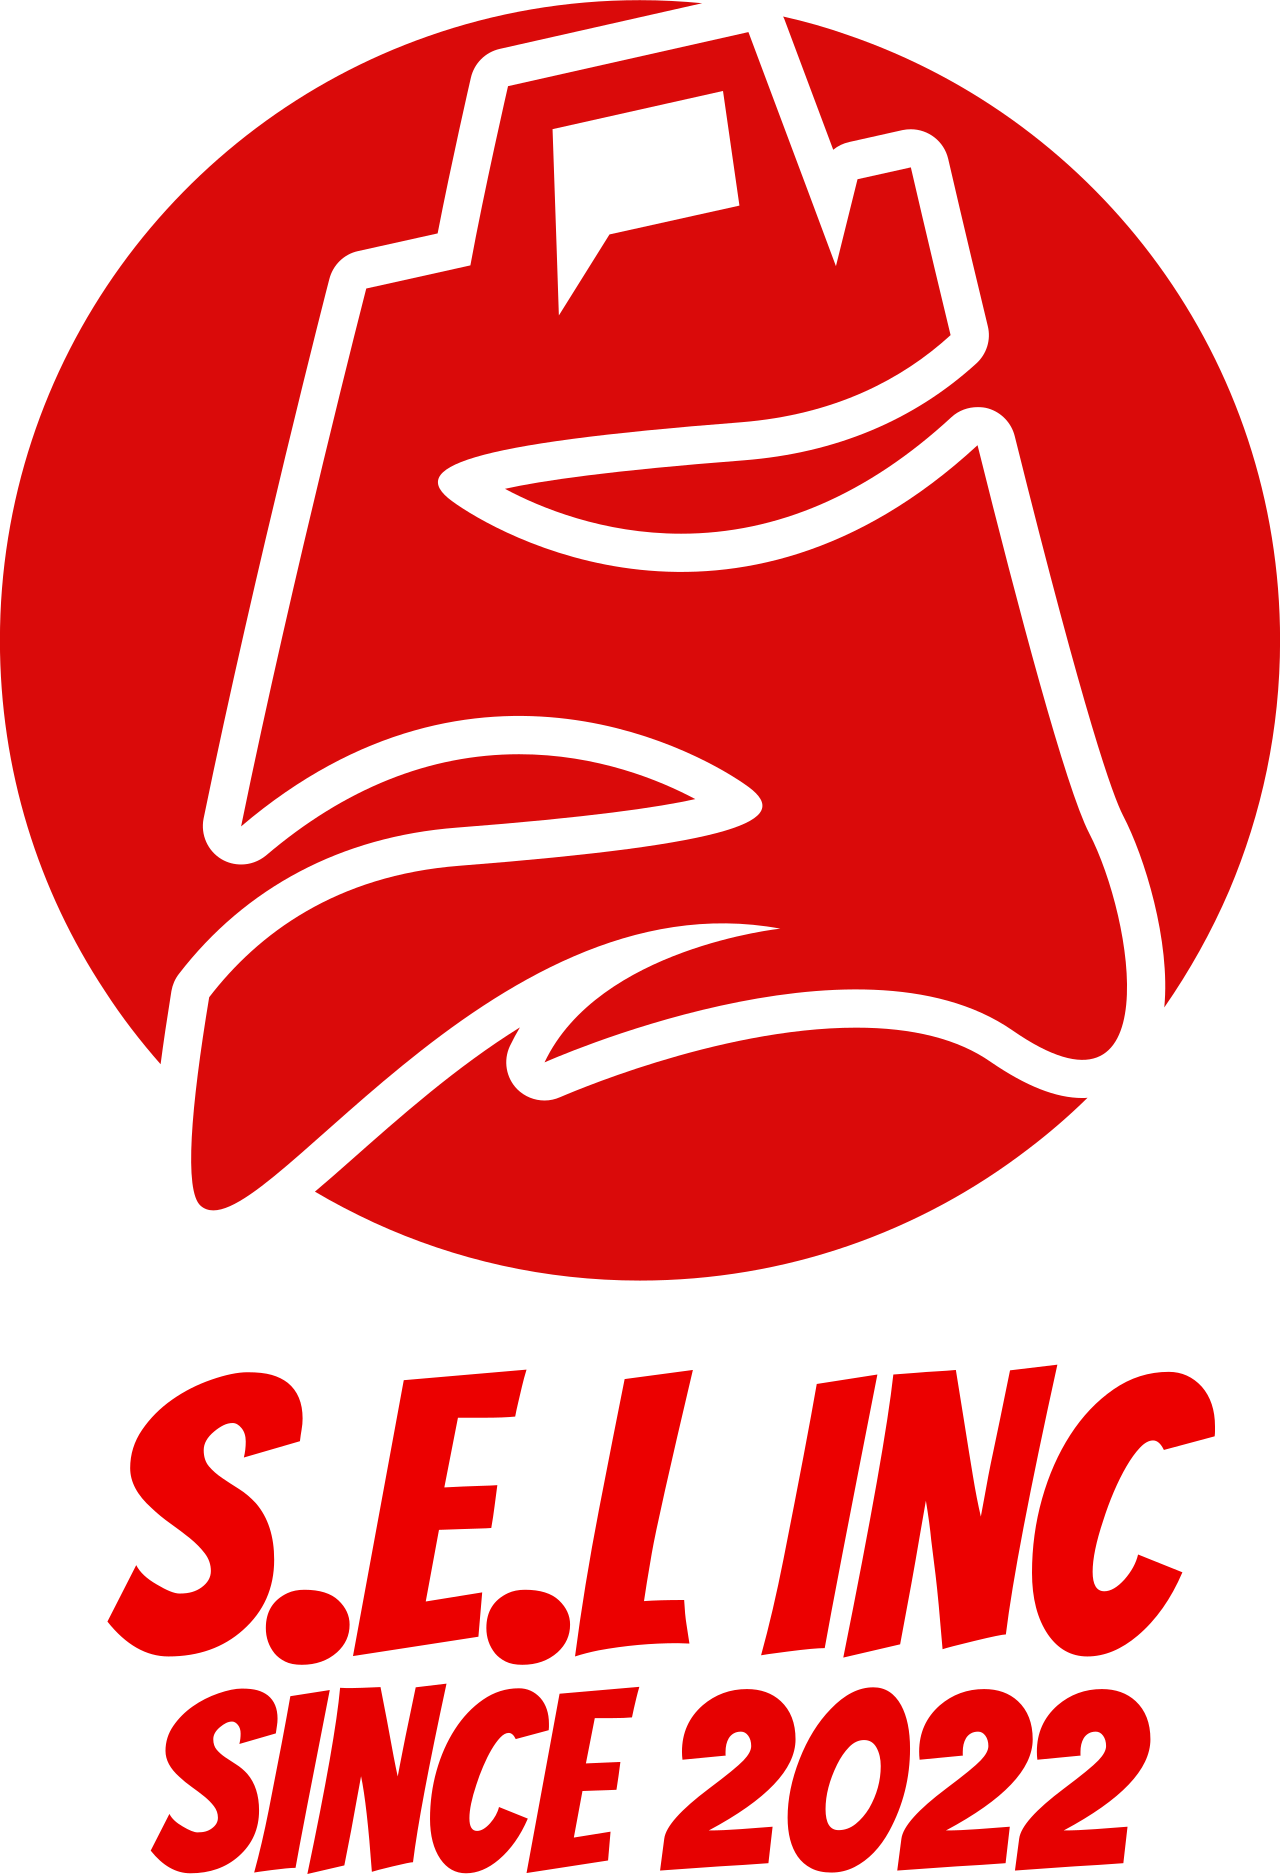 S.E.L INC's logo